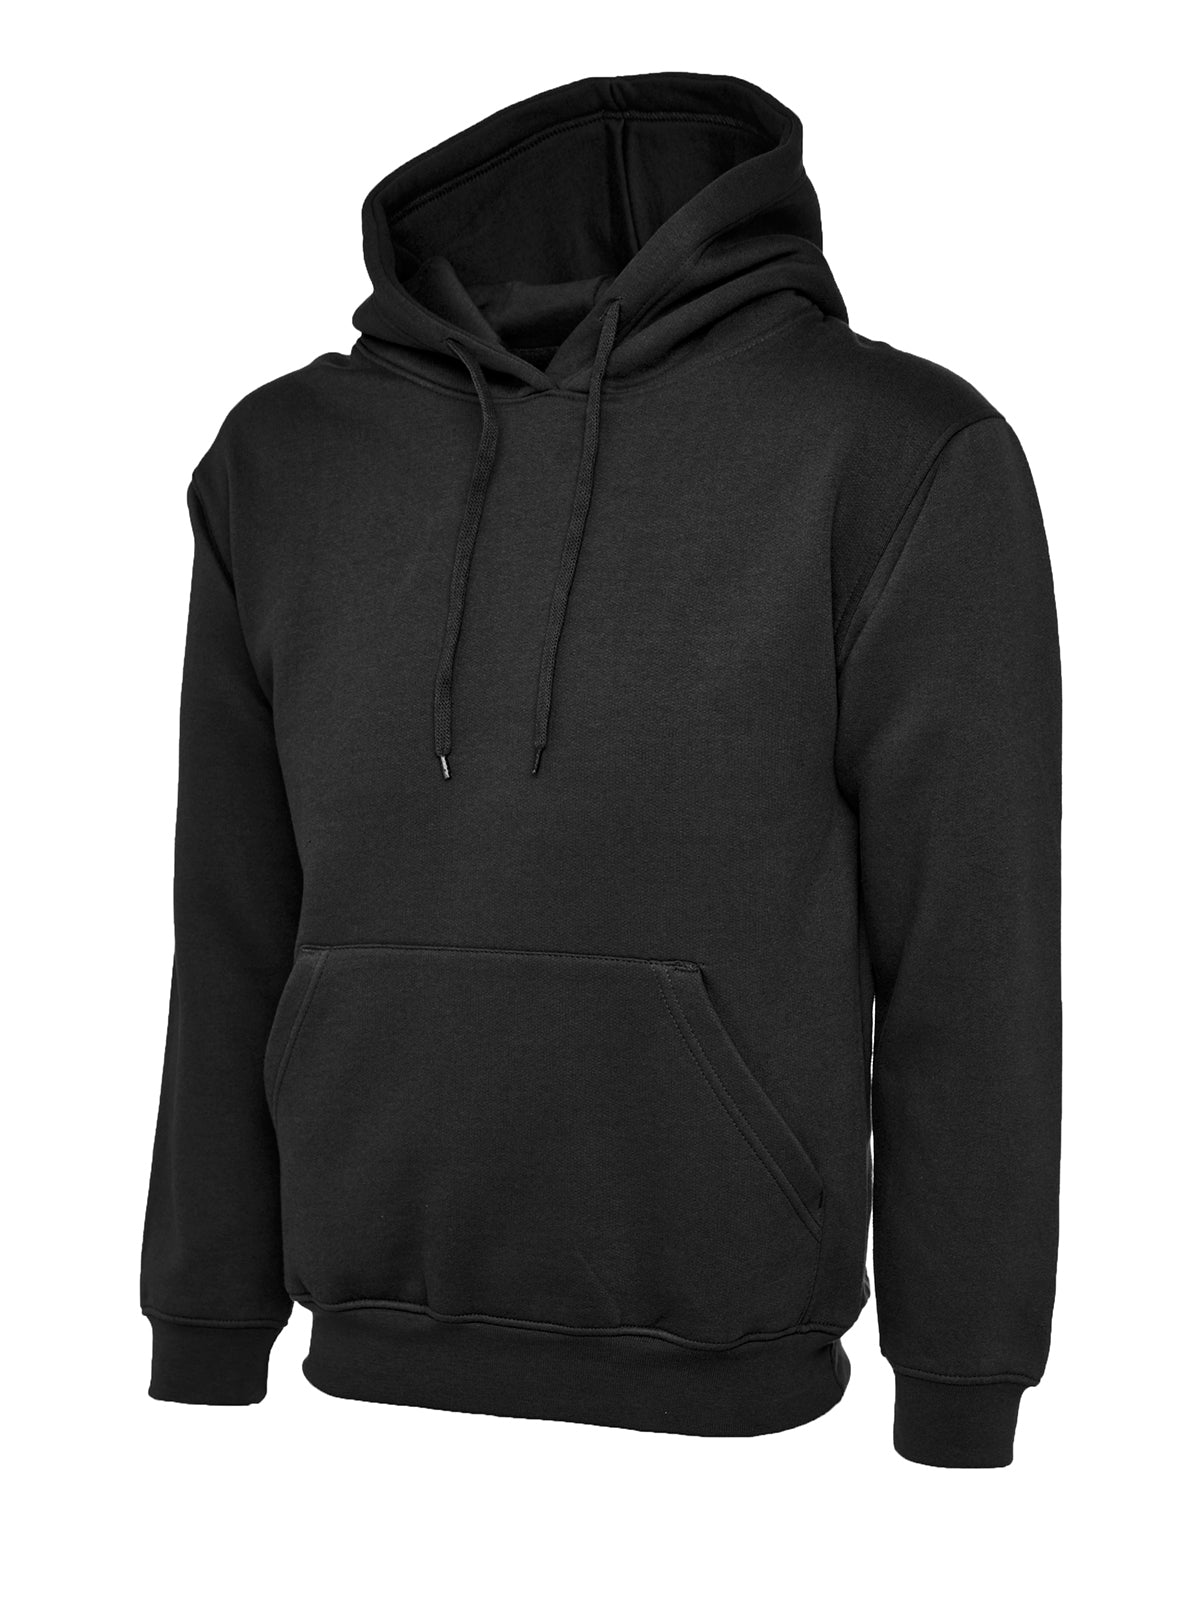 Uneek Ladies Deluxe Hooded Sweatshirt UC510 - Black